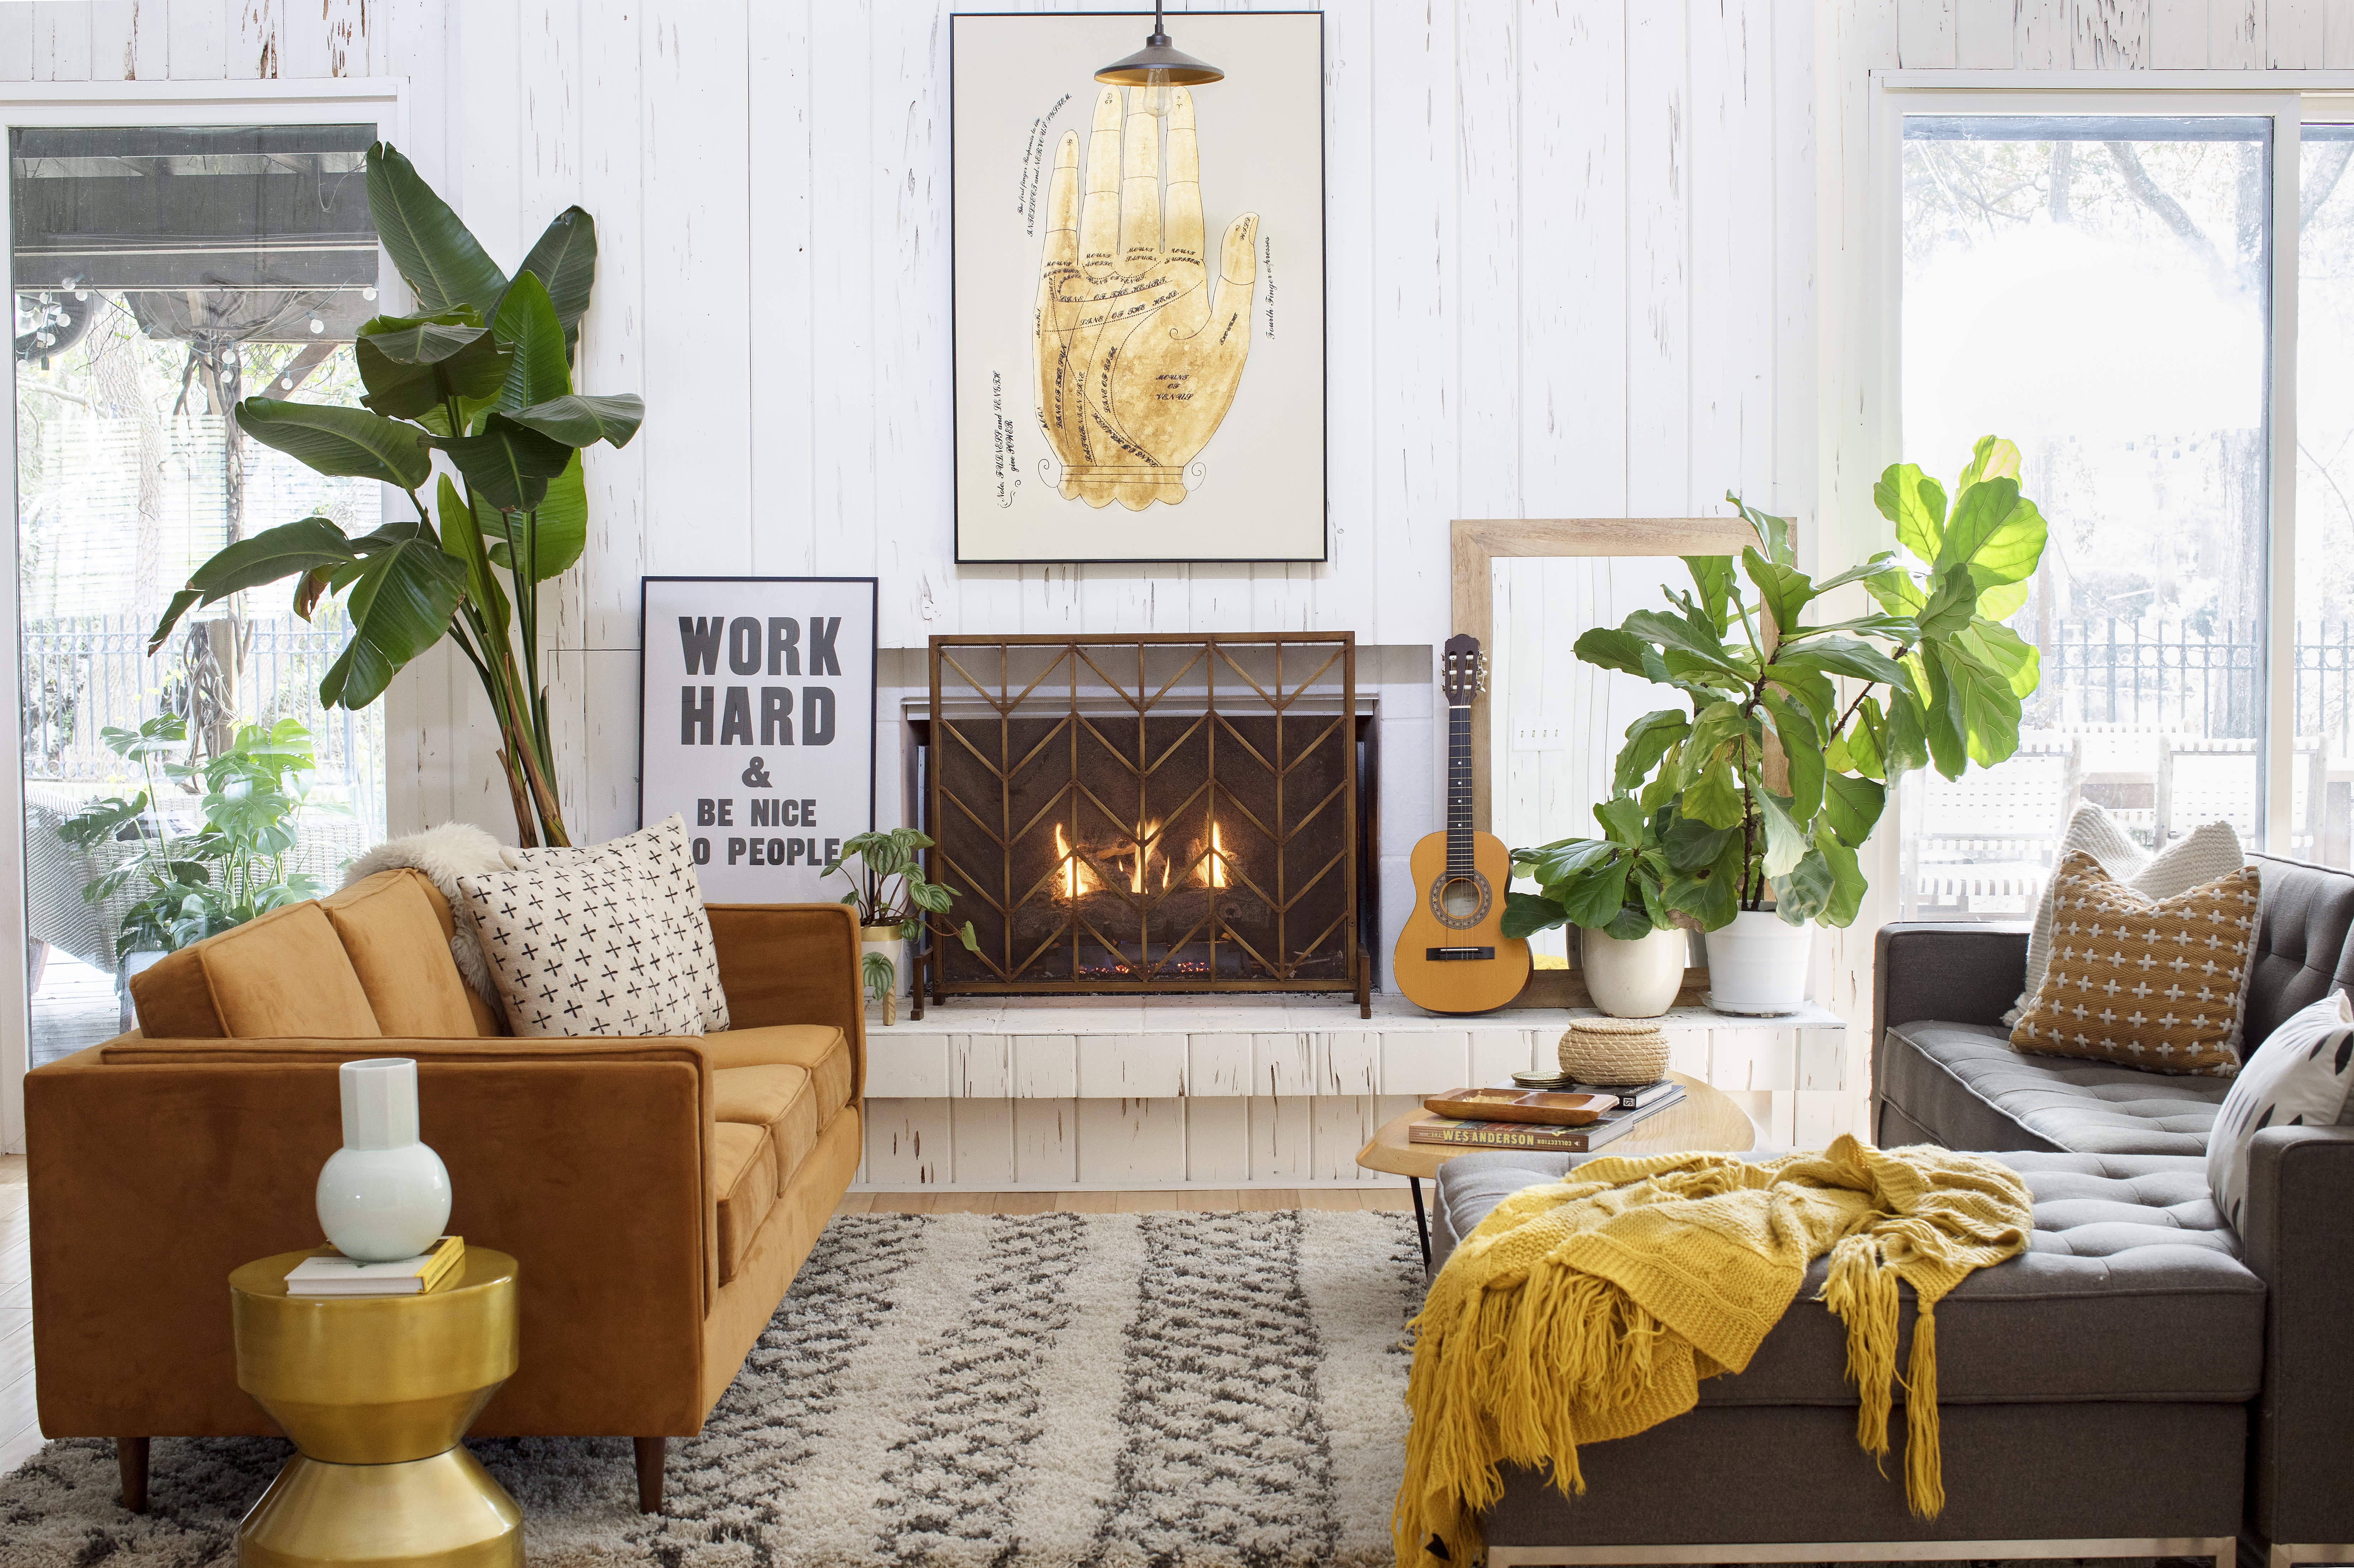 18 Cabin Decor Ideas for a Cozy, Homey Design